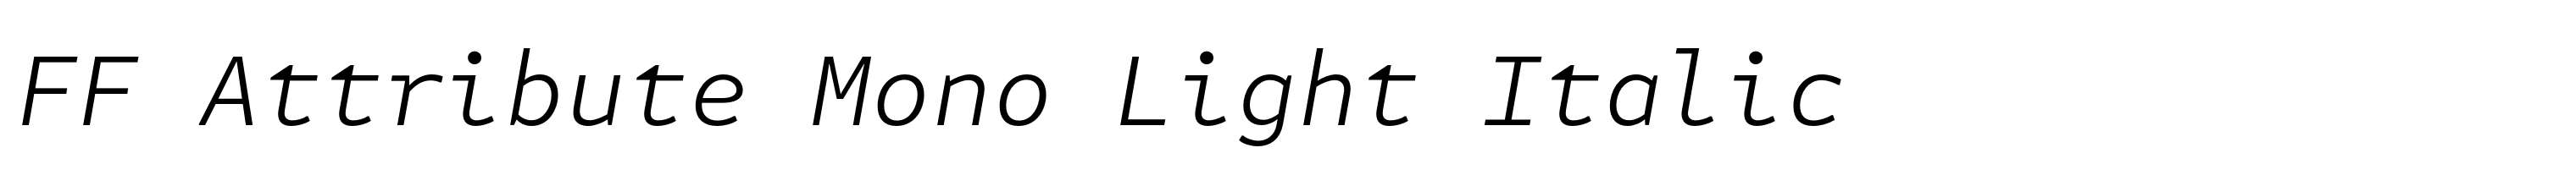 FF Attribute Mono Light Italic